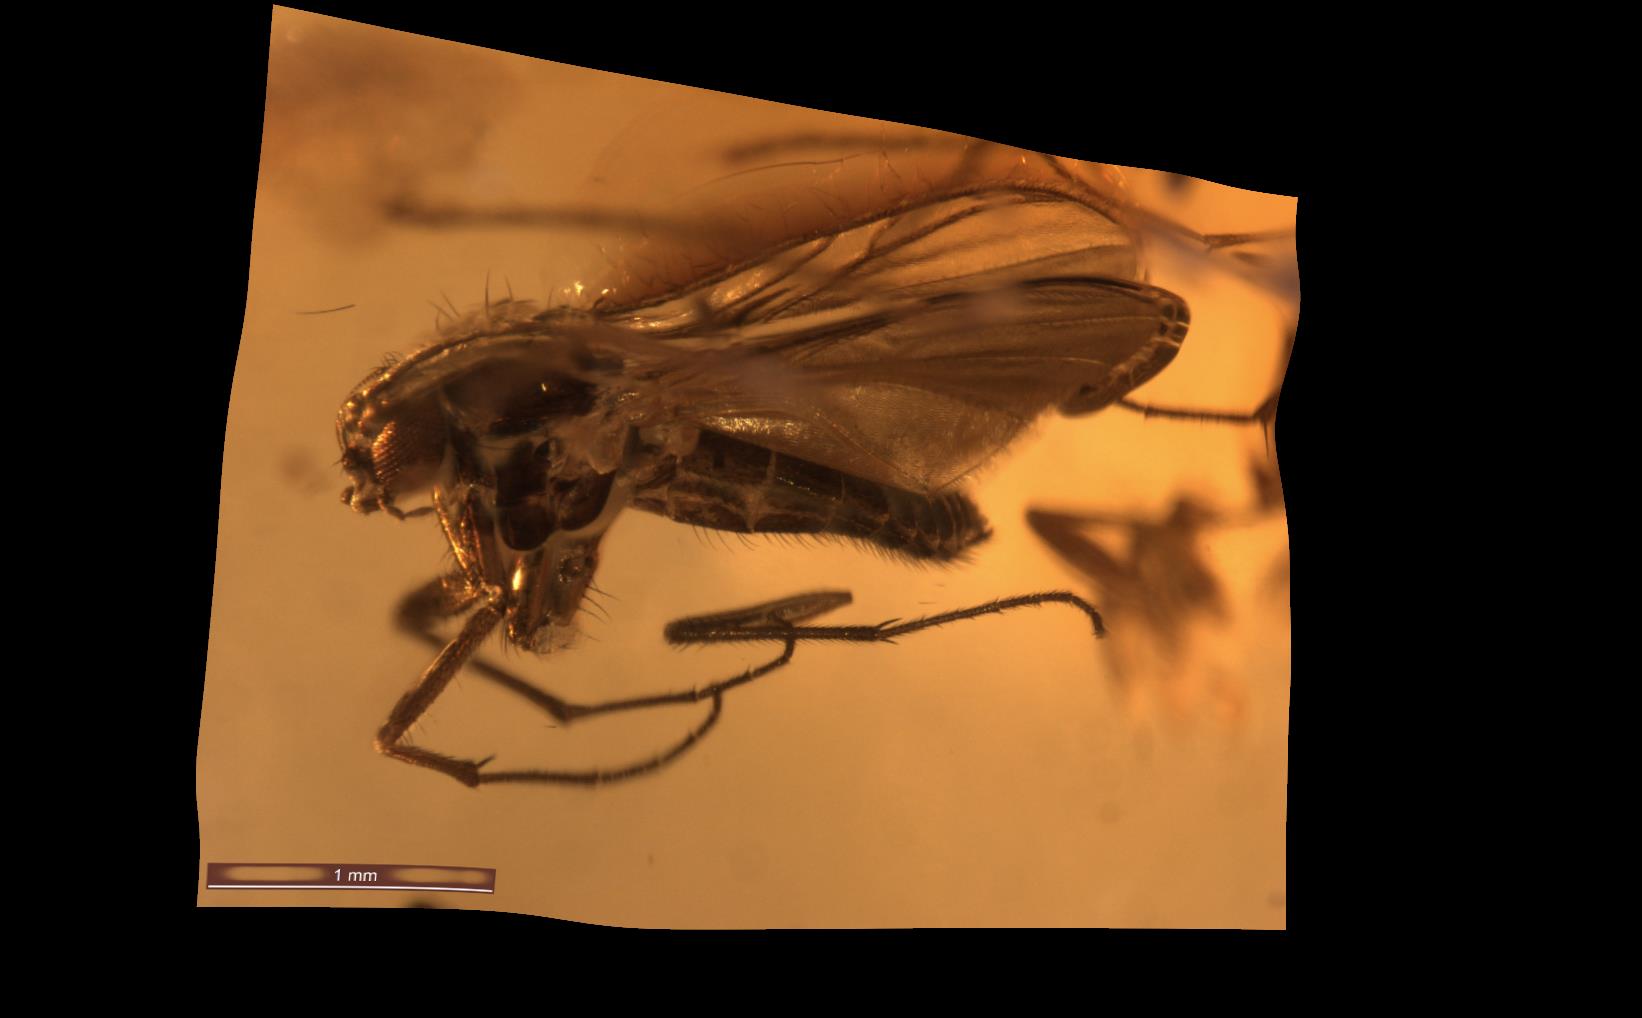 Gwybedyn y Madarch (Sciaridae)